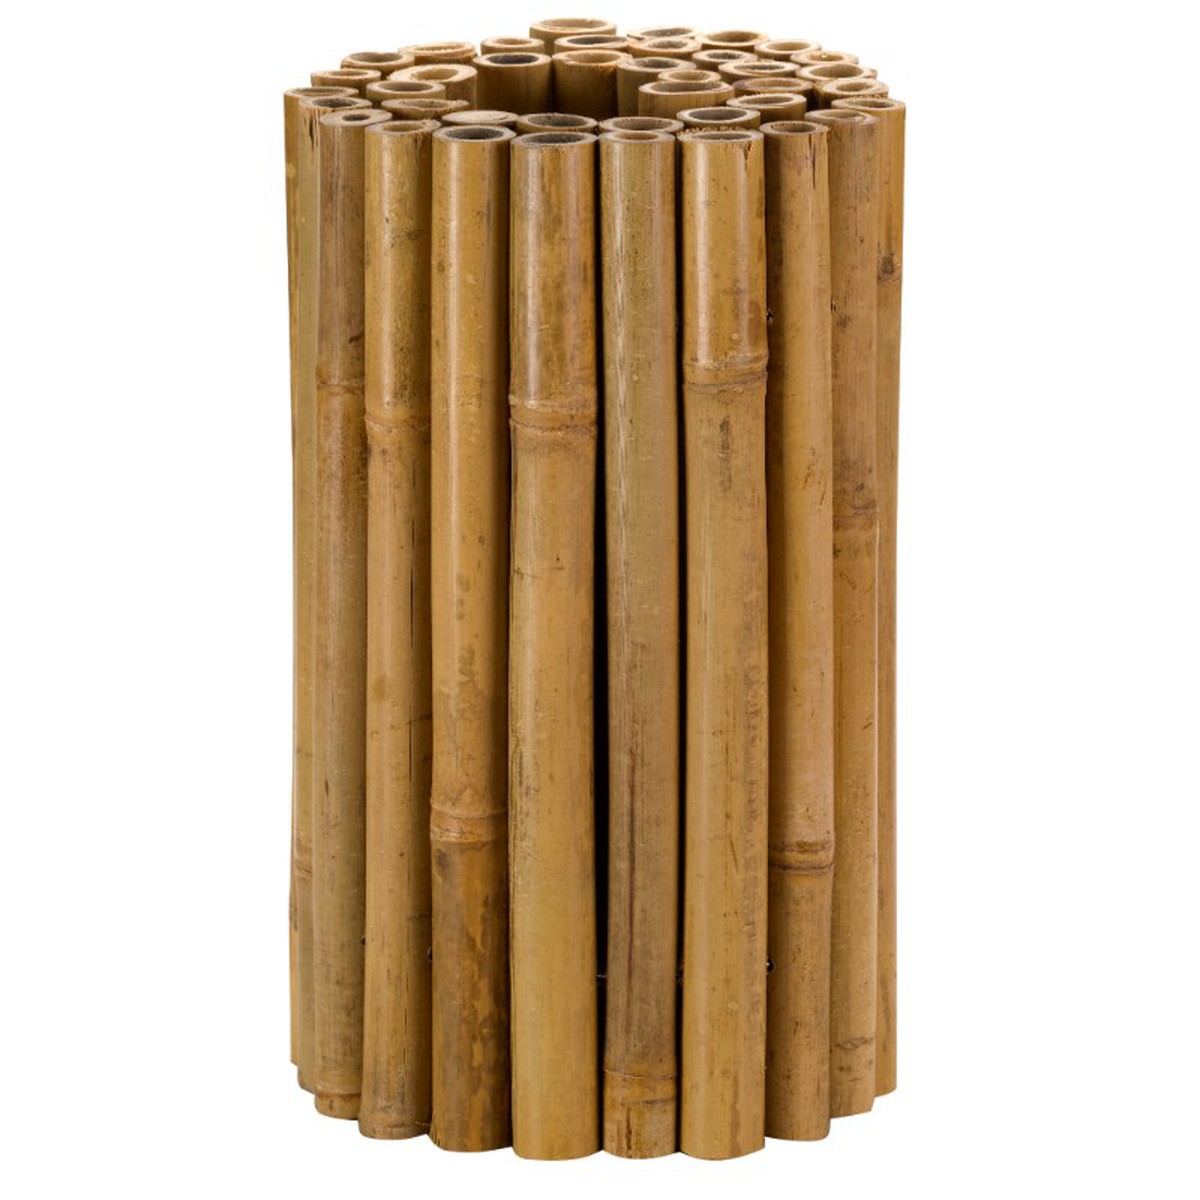   Bordure en bambou 30cm x 1m  30x100cm